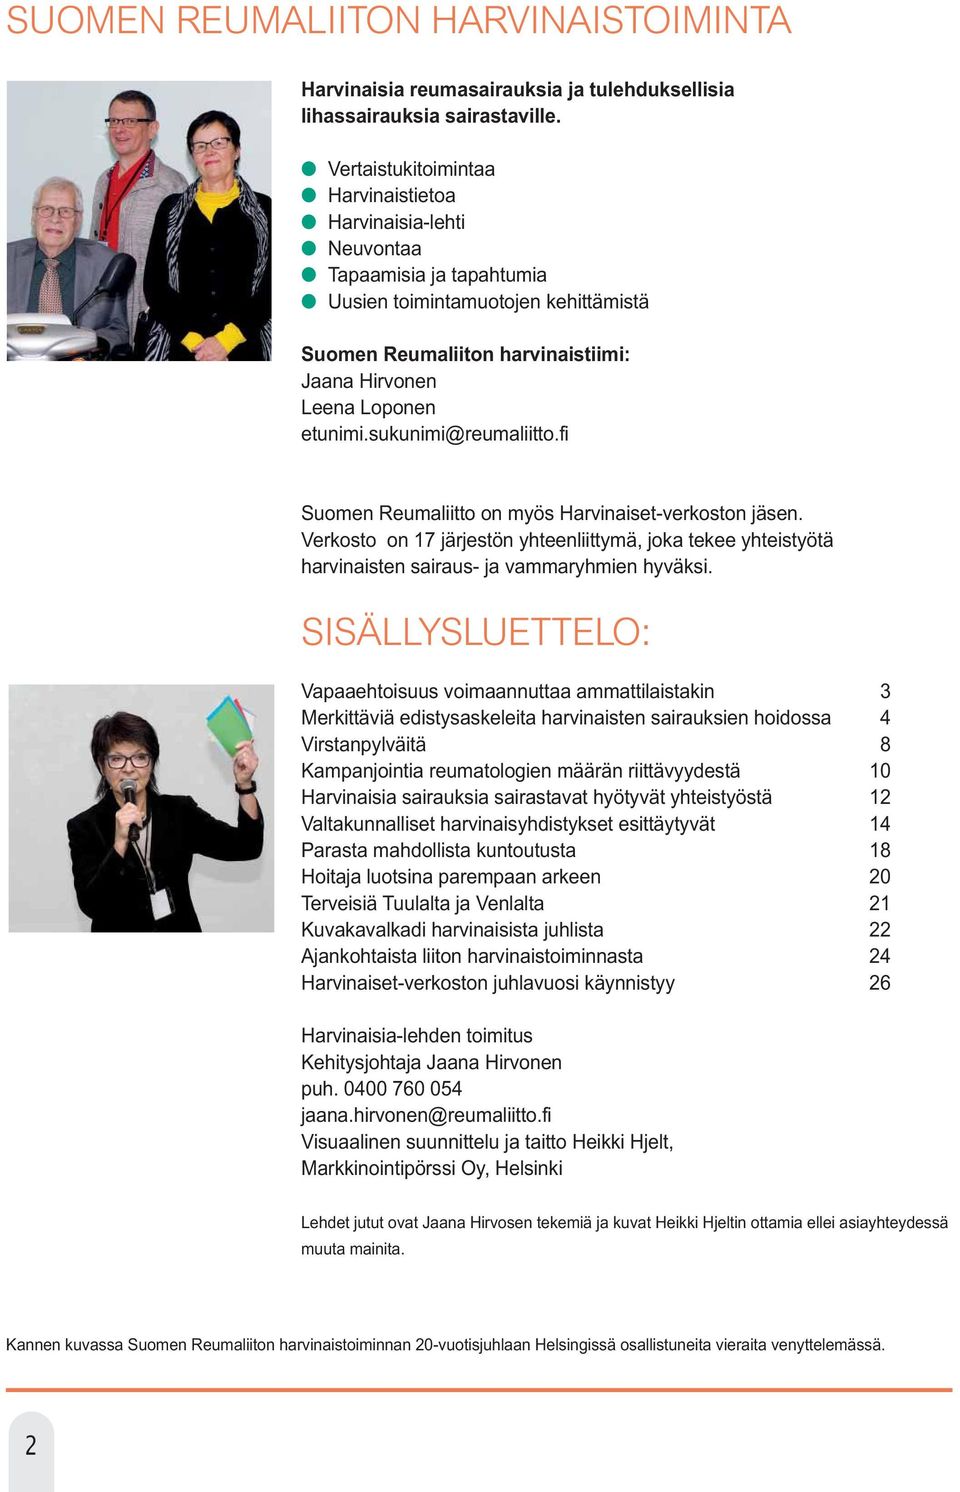 sukunimi@reumaliitto.fi Suomen Reumaliitto on myös Harvinaiset-verkoston jäsen. Verkosto on 17 järjestön yhteenliittymä, joka tekee yhteistyötä harvinaisten sairaus- ja vammaryhmien hyväksi.